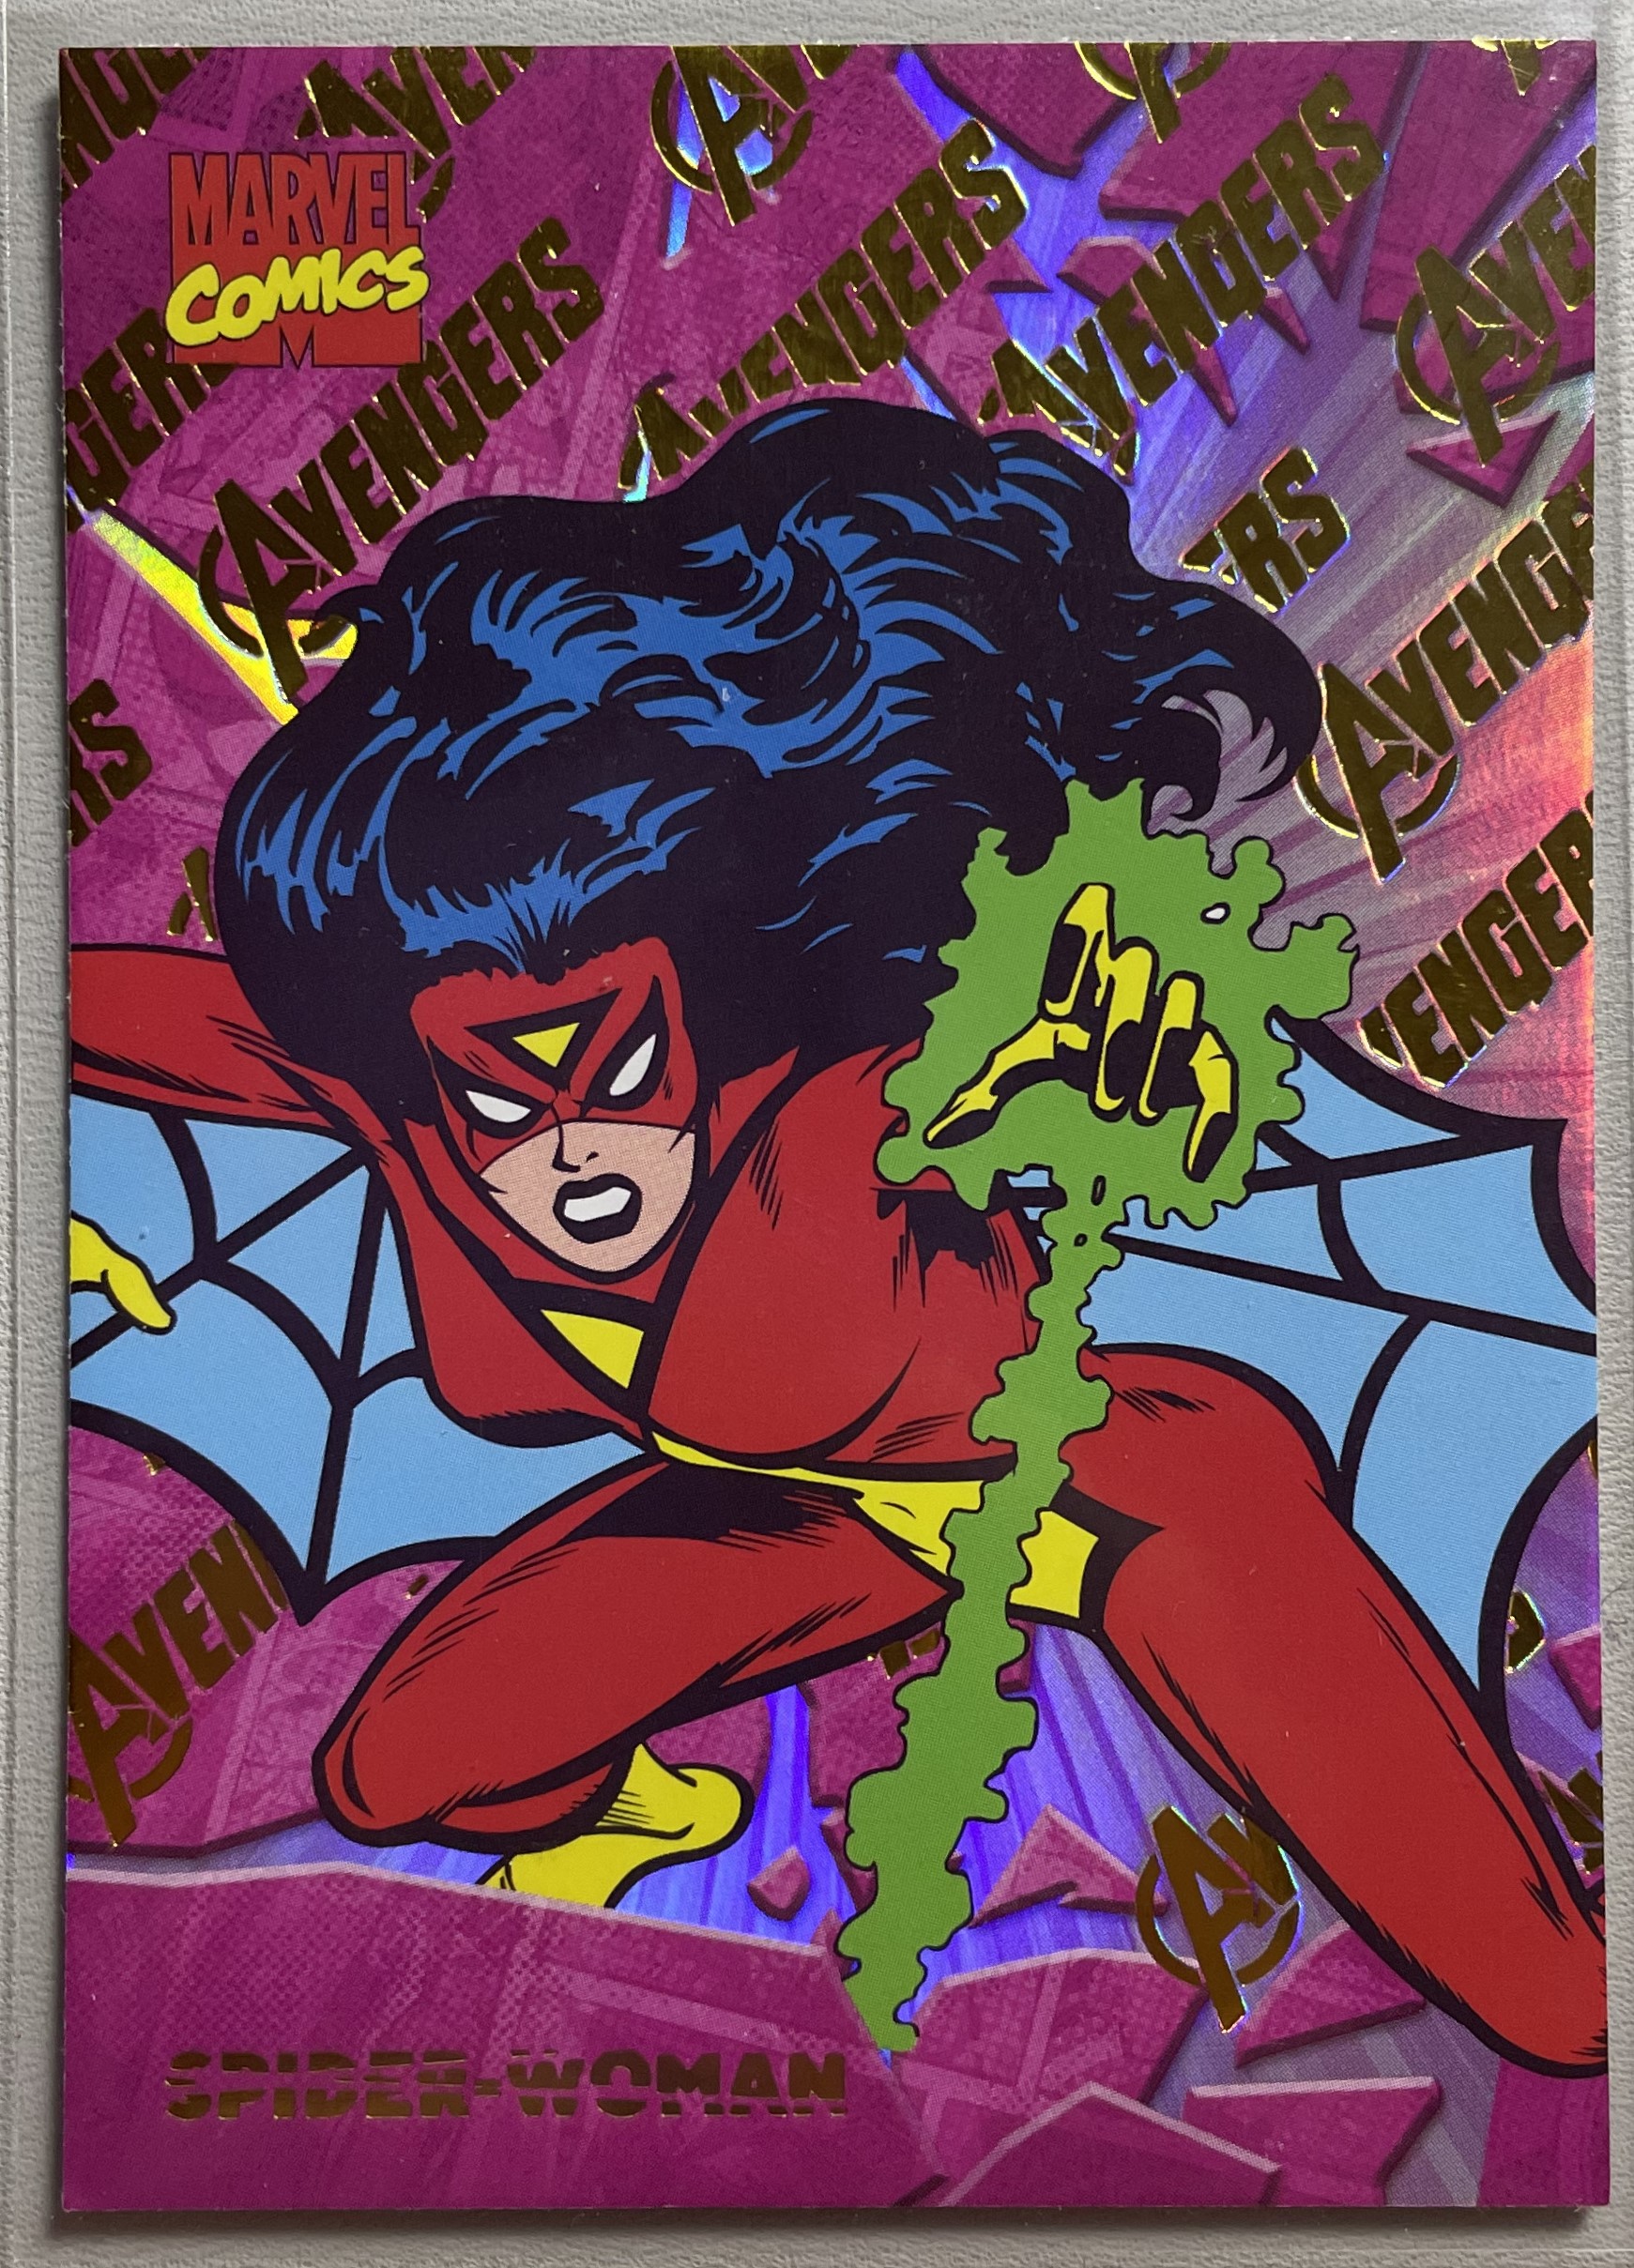 2024 FINDING CARD Marvel (MCU) 漫威演变 粉条代拍 寻卡漫威宇宙漫画演变系列 超凡人物卡 复联折射 复仇者平行 高阶超大比例1:800 CC-119 蜘蛛女侠 凑套必备